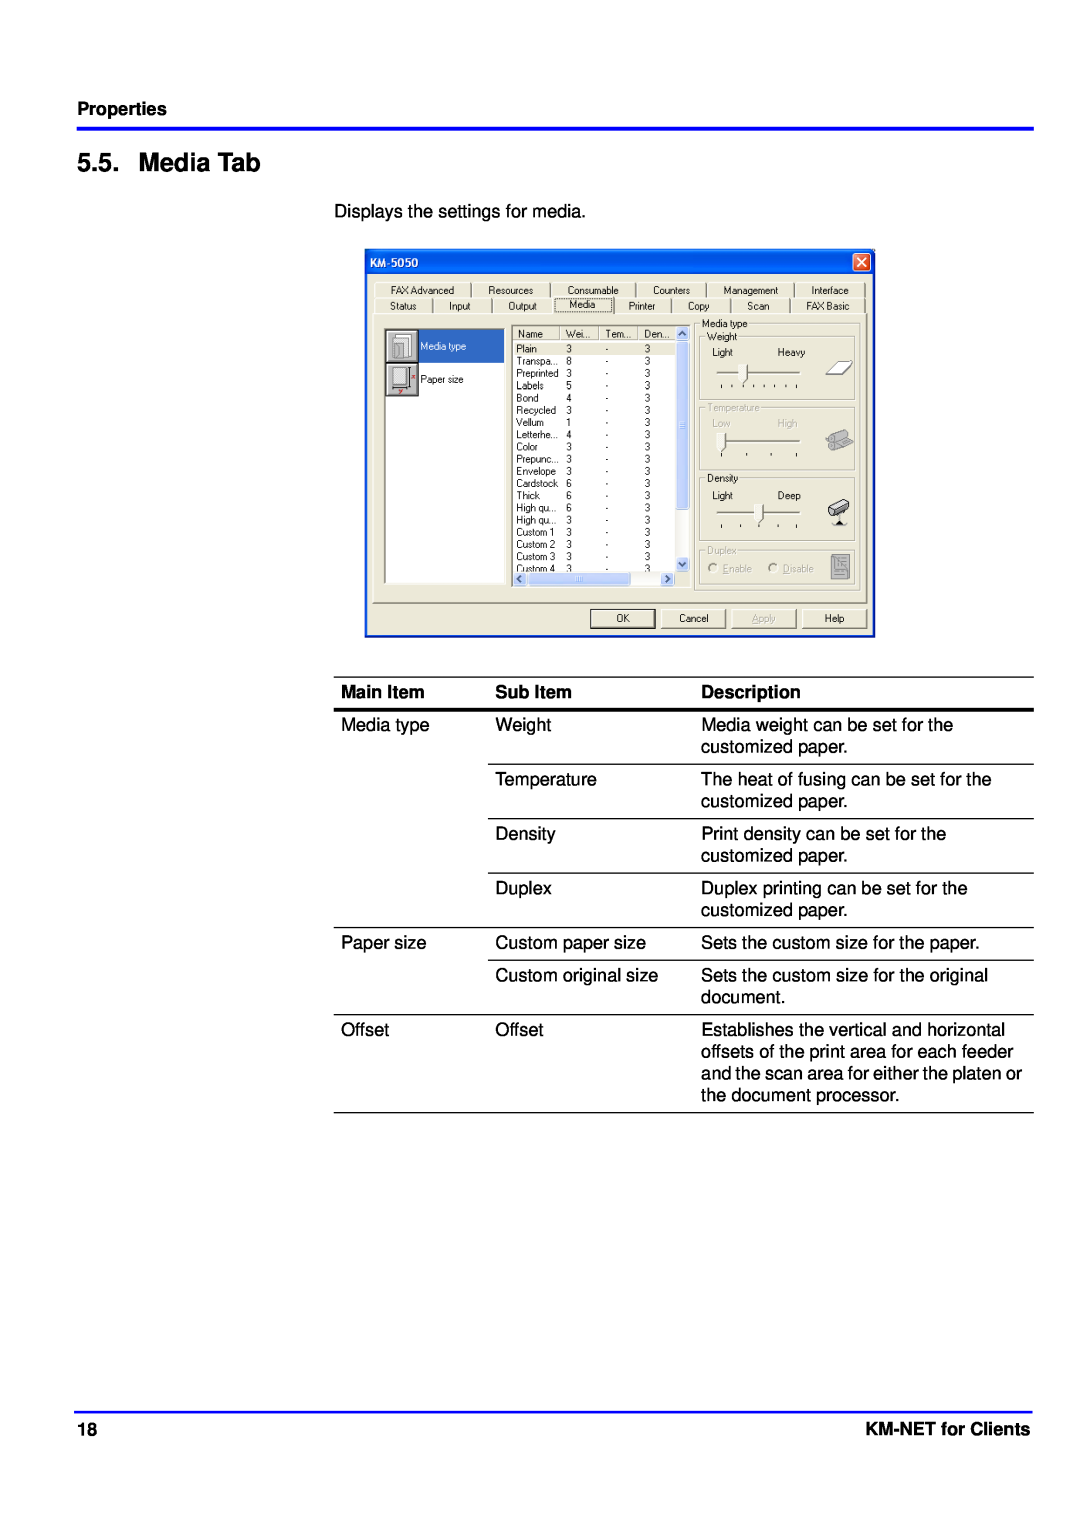 Kyocera manual Media Tab, Properties, Main Item, Sub Item, Description, KM-NETfor Clients 